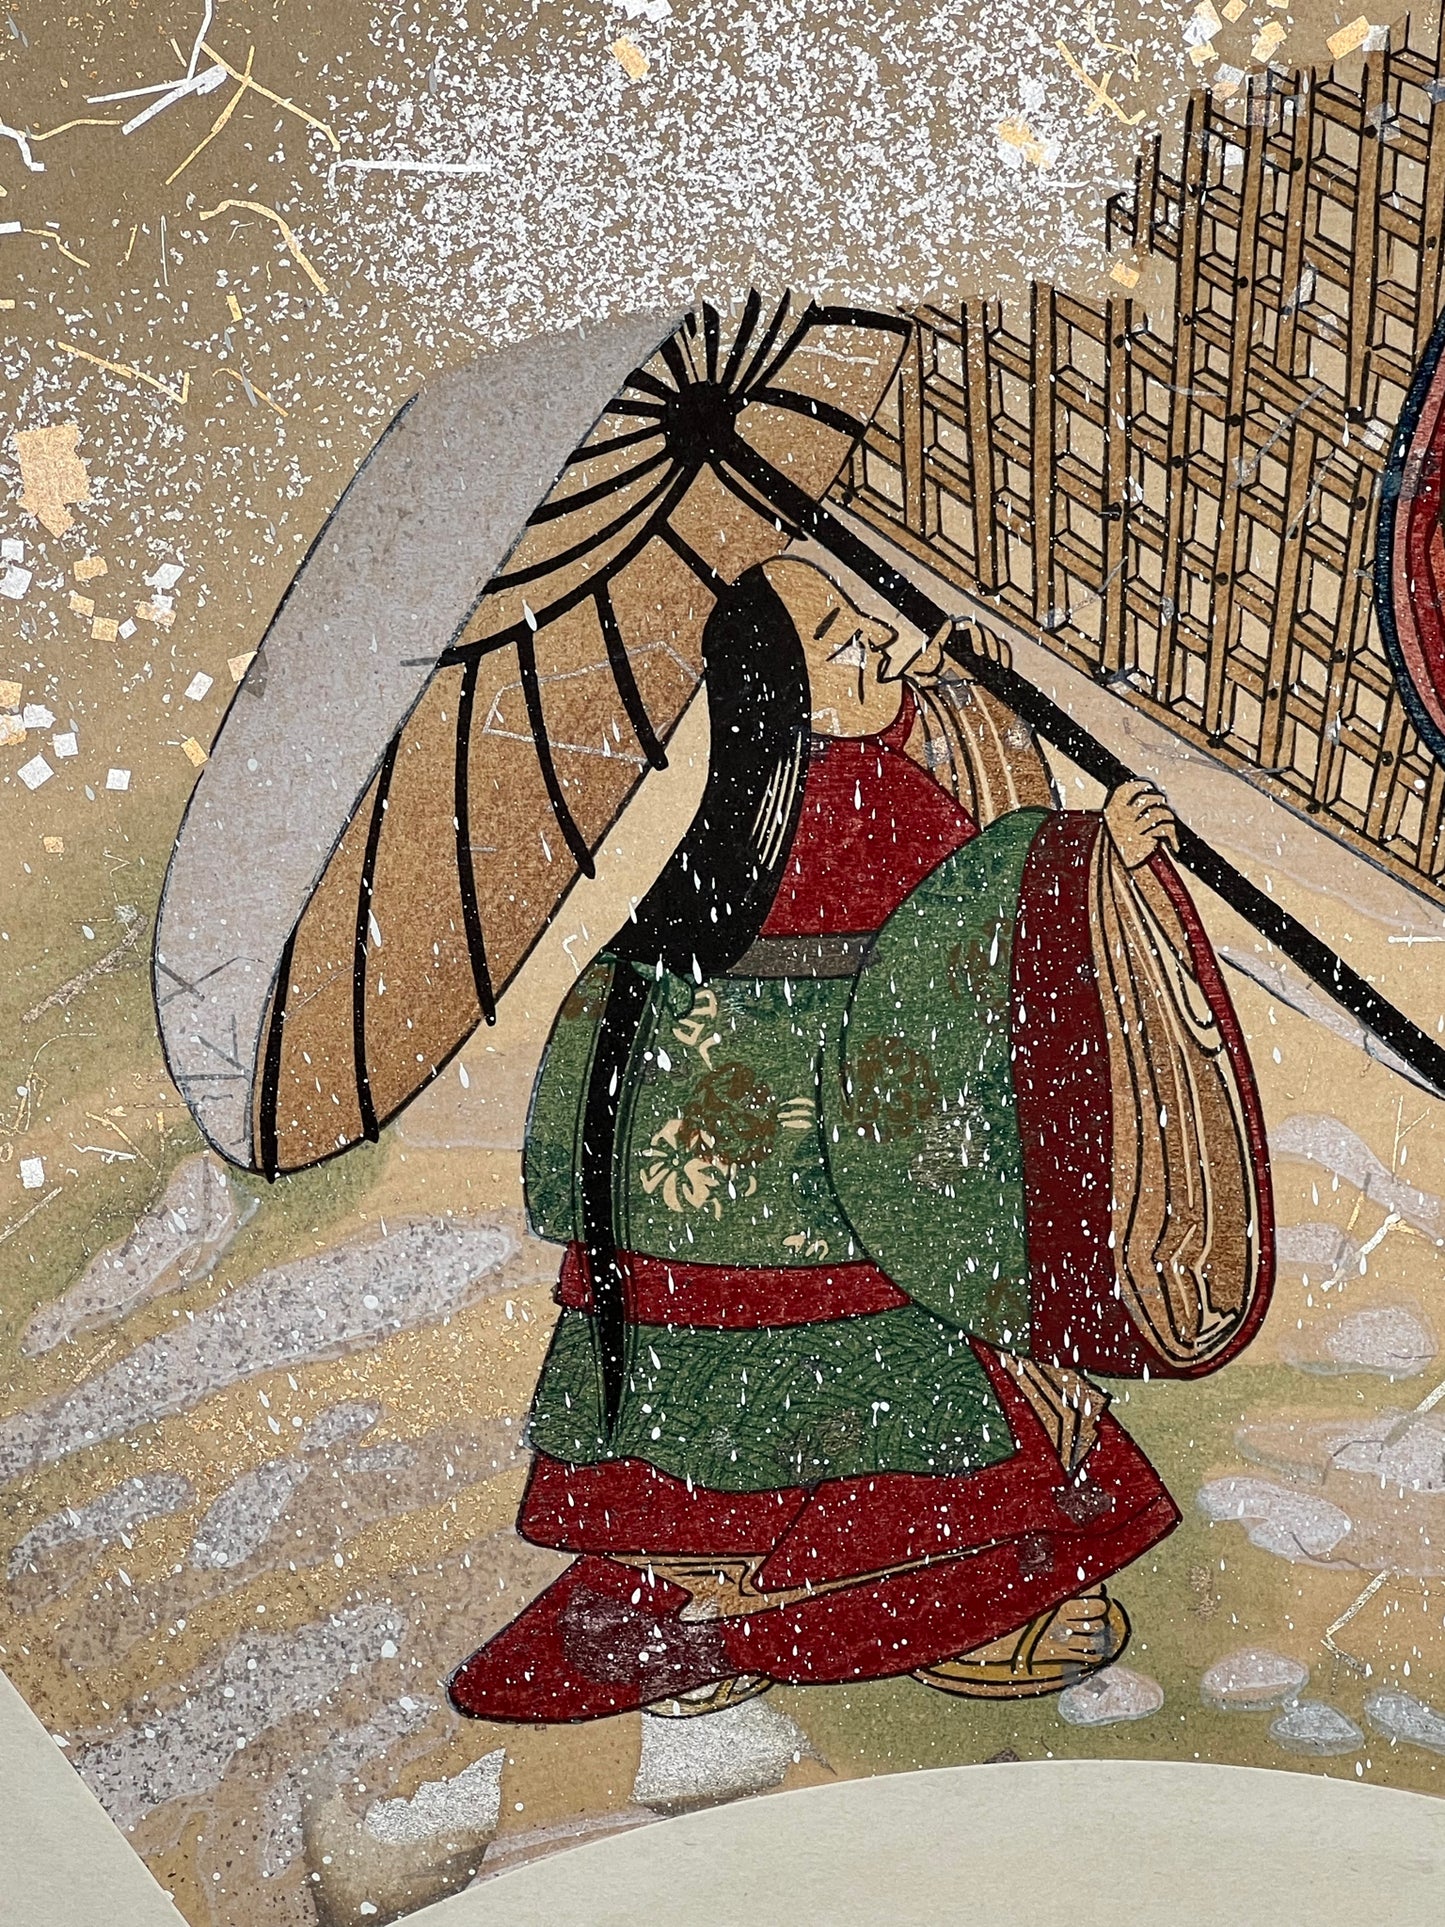 Estampe japonaise en forme d'éventail parsemée de fragments d'or et d'argent, matin neigeux, gros plan vieille femme se protégeant de la neige avec une ombrelle.